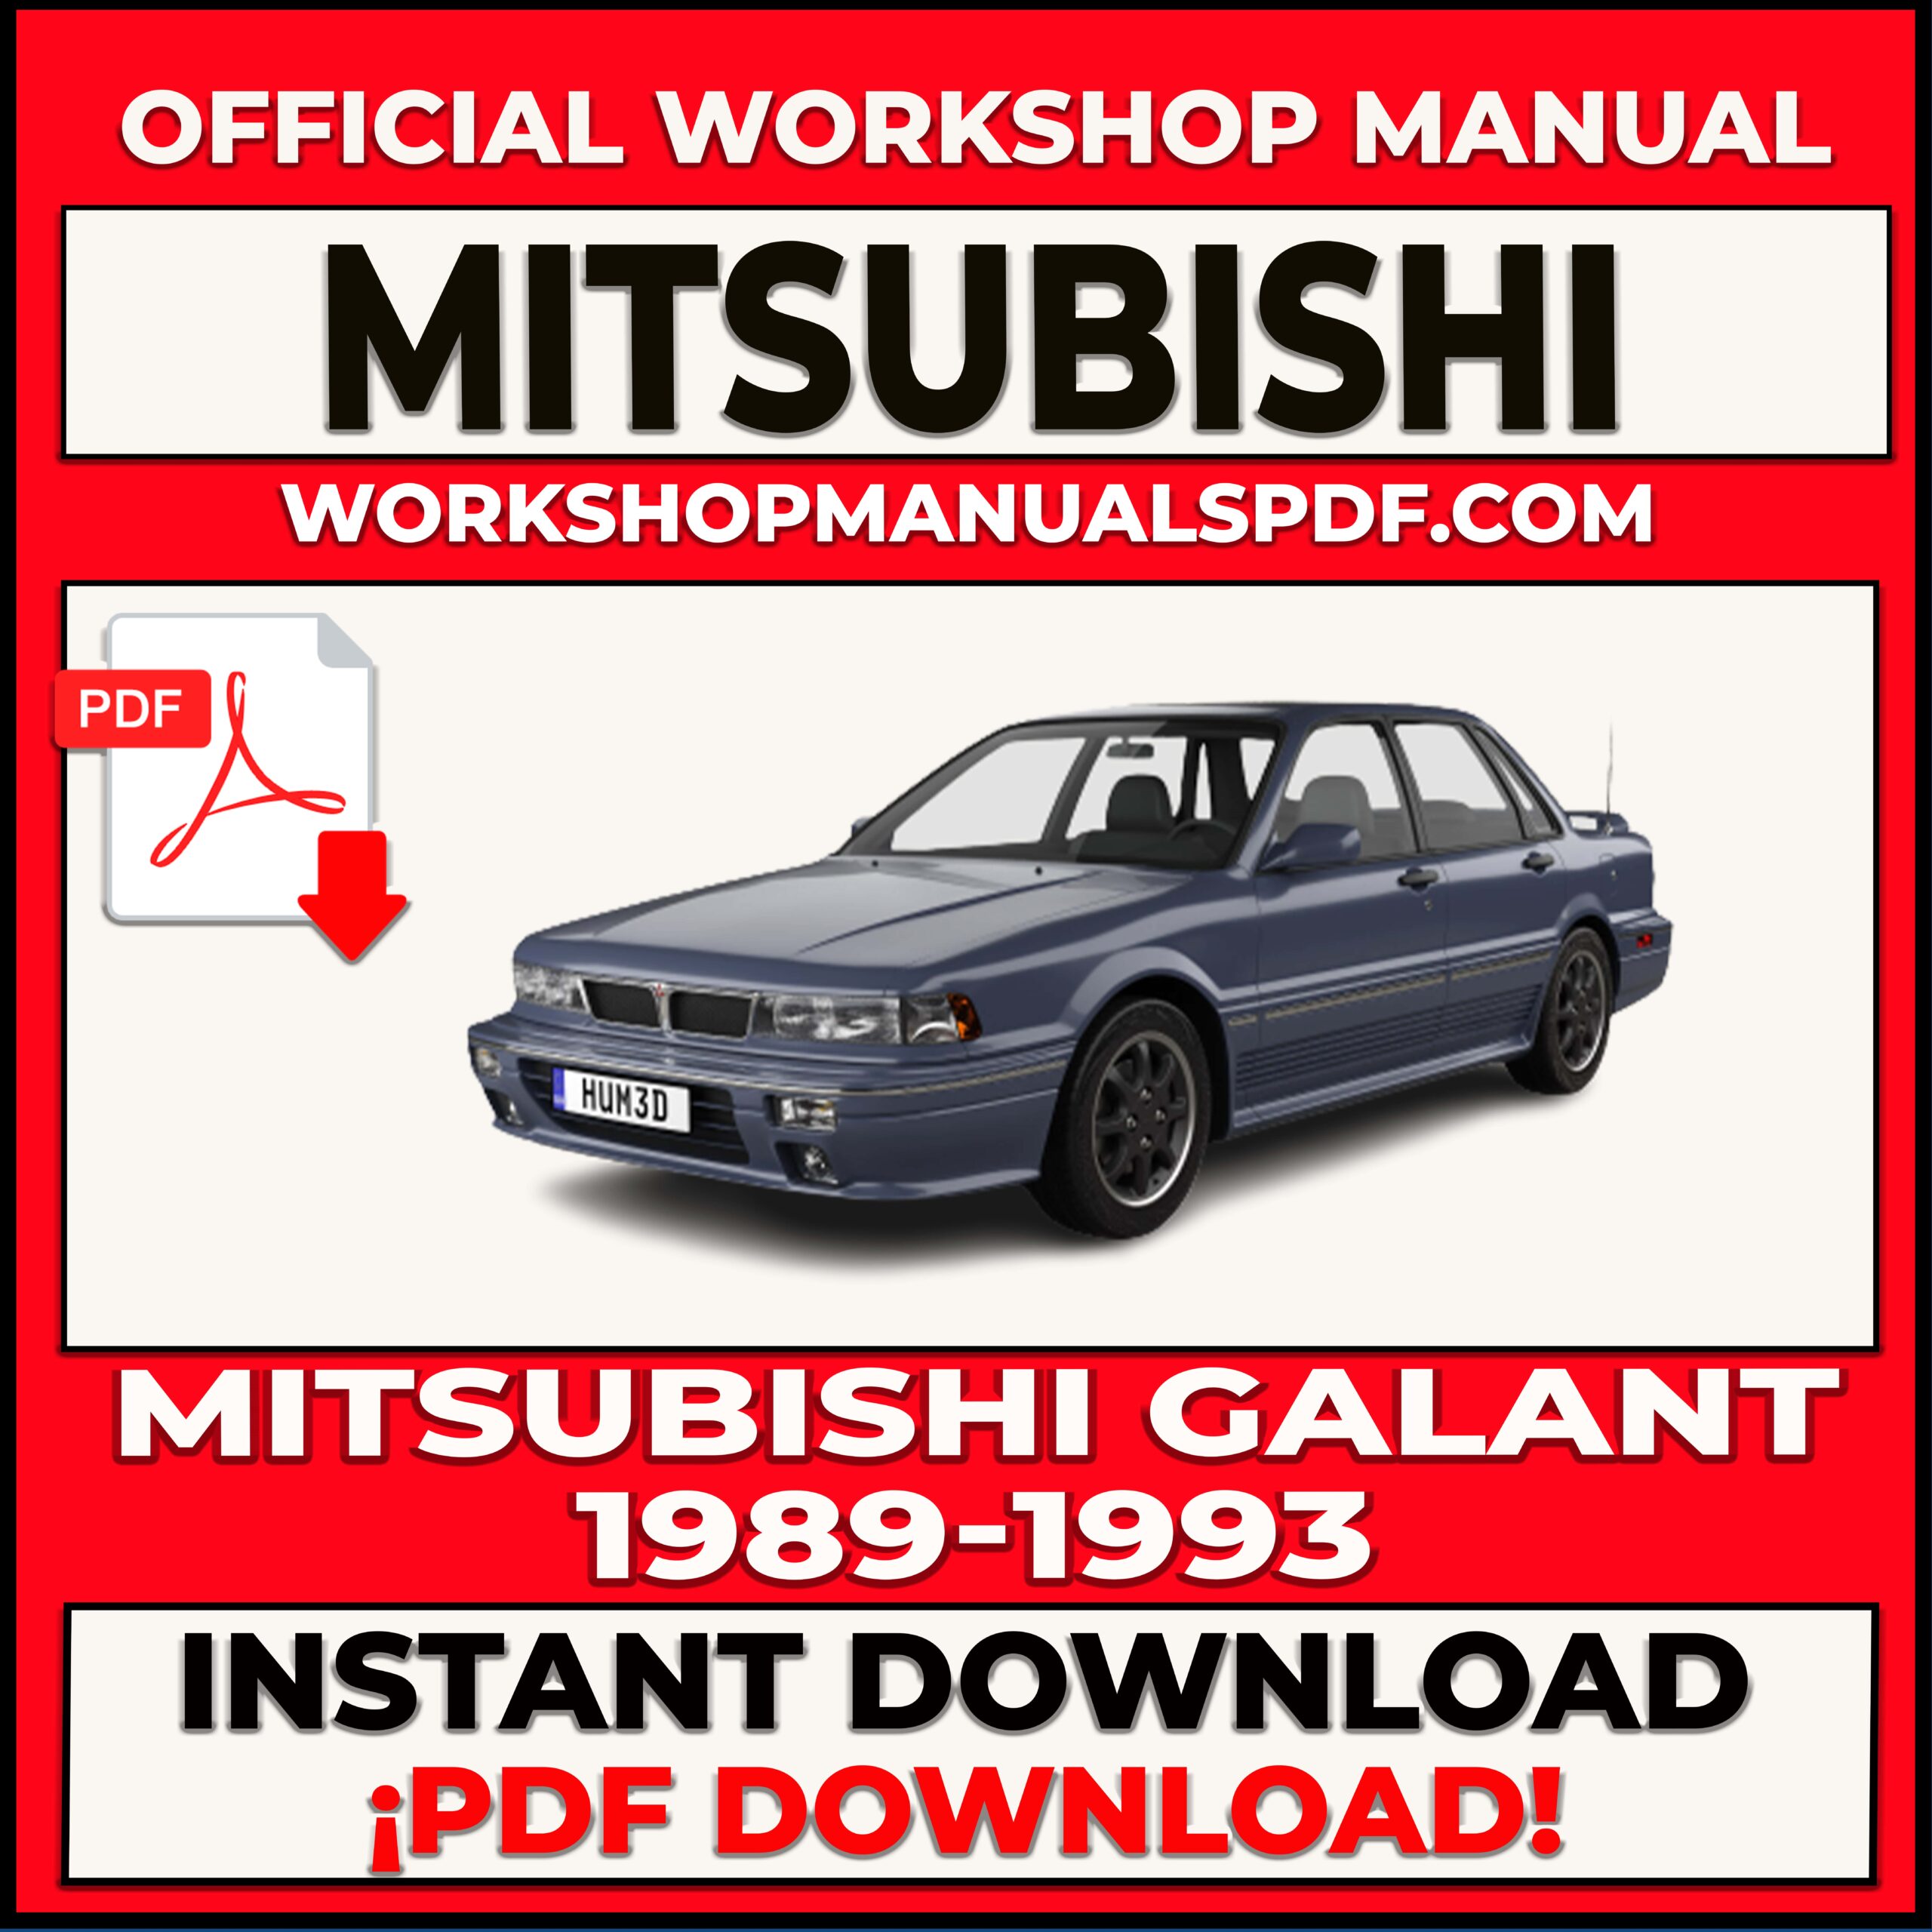 Mitsubishi Galant 1989-1993 Workshop Repair Manual